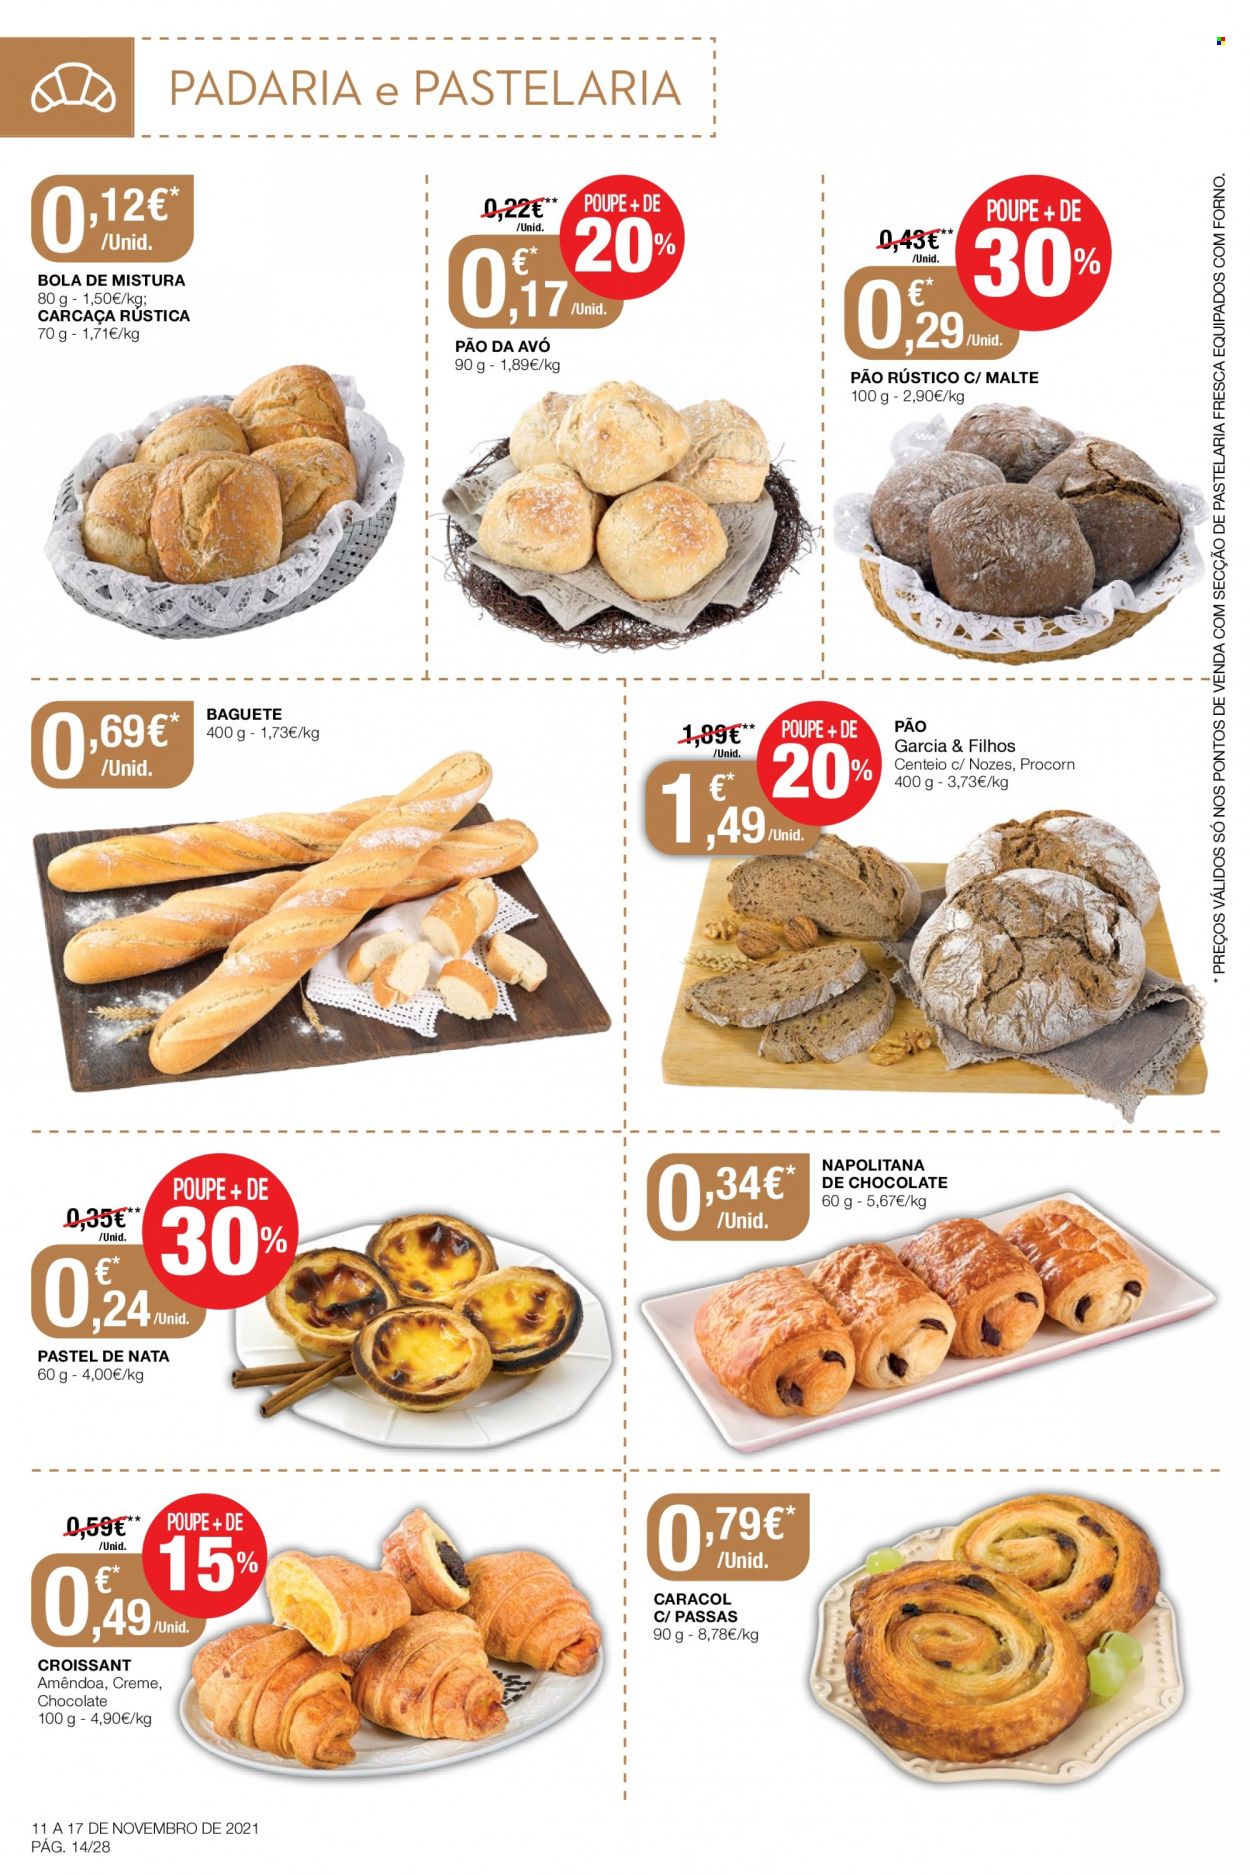 thumbnail - Folheto Intermarché - 11.11.2021 - 17.11.2021 - Produtos em promoção - pão, baguete, bola de mistura, Pão da Avó, croissant, amêndoa. Página 14.